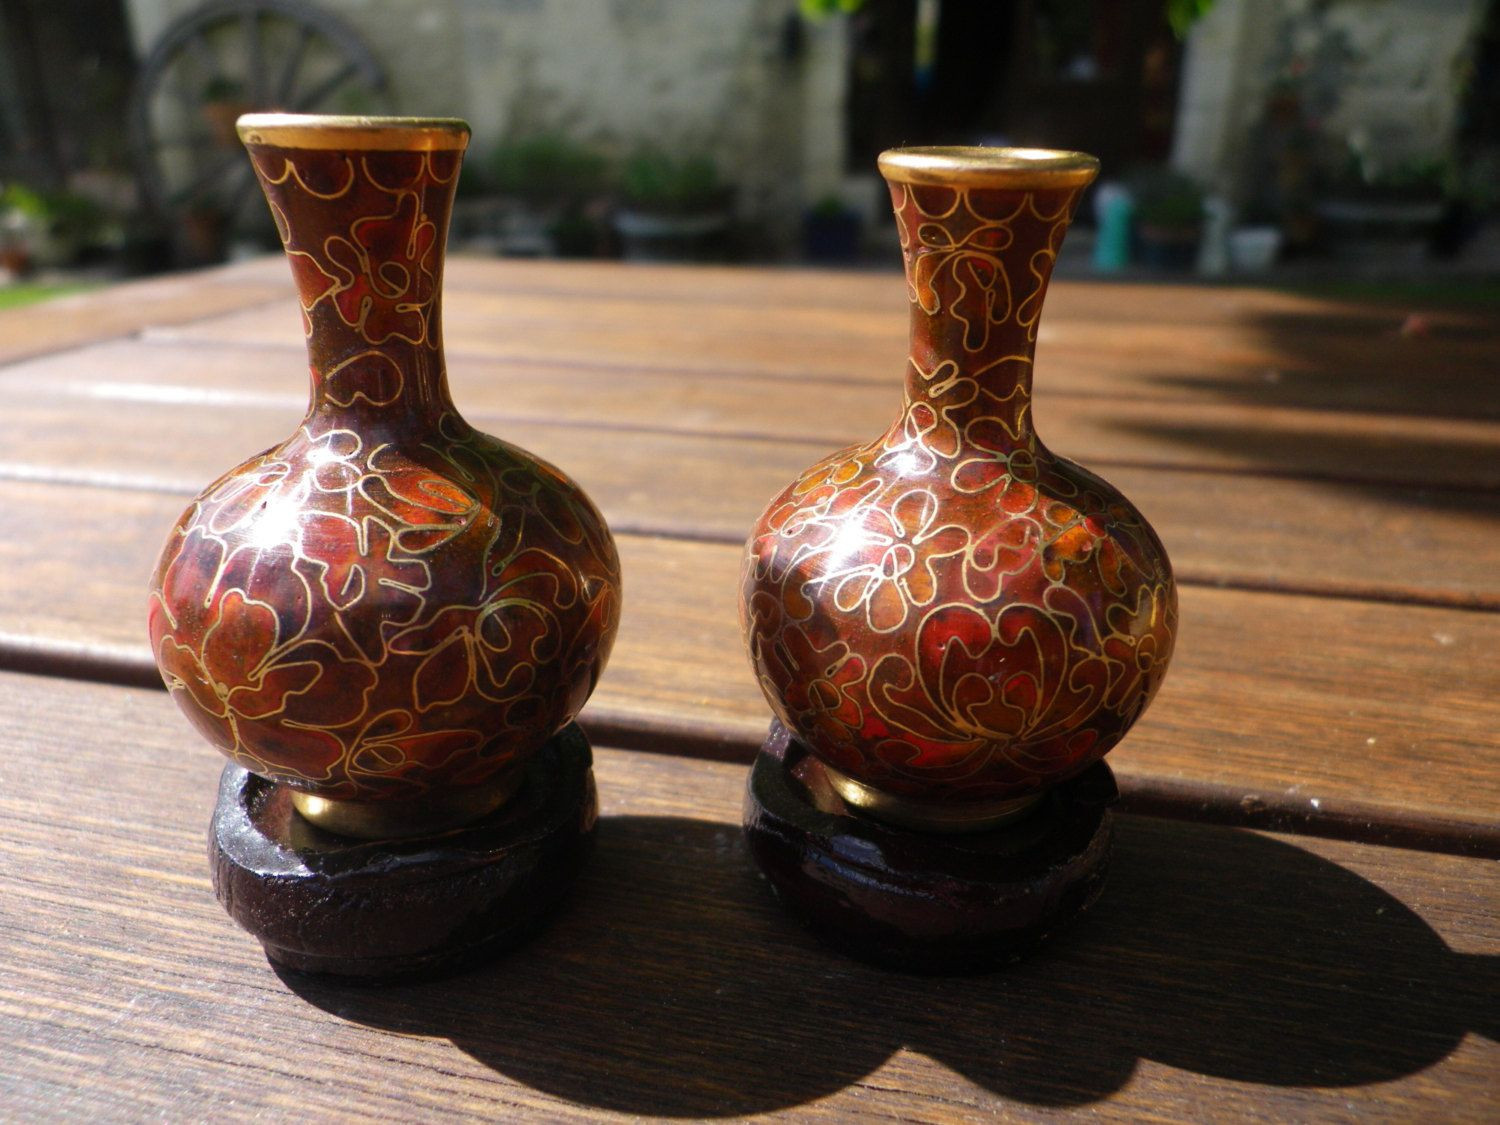 antique cloisonne vase value of red vase set images miniature cloisonne vase set brown enamel with inside miniature cloisonne vase set brown enamel with red flowers on brass